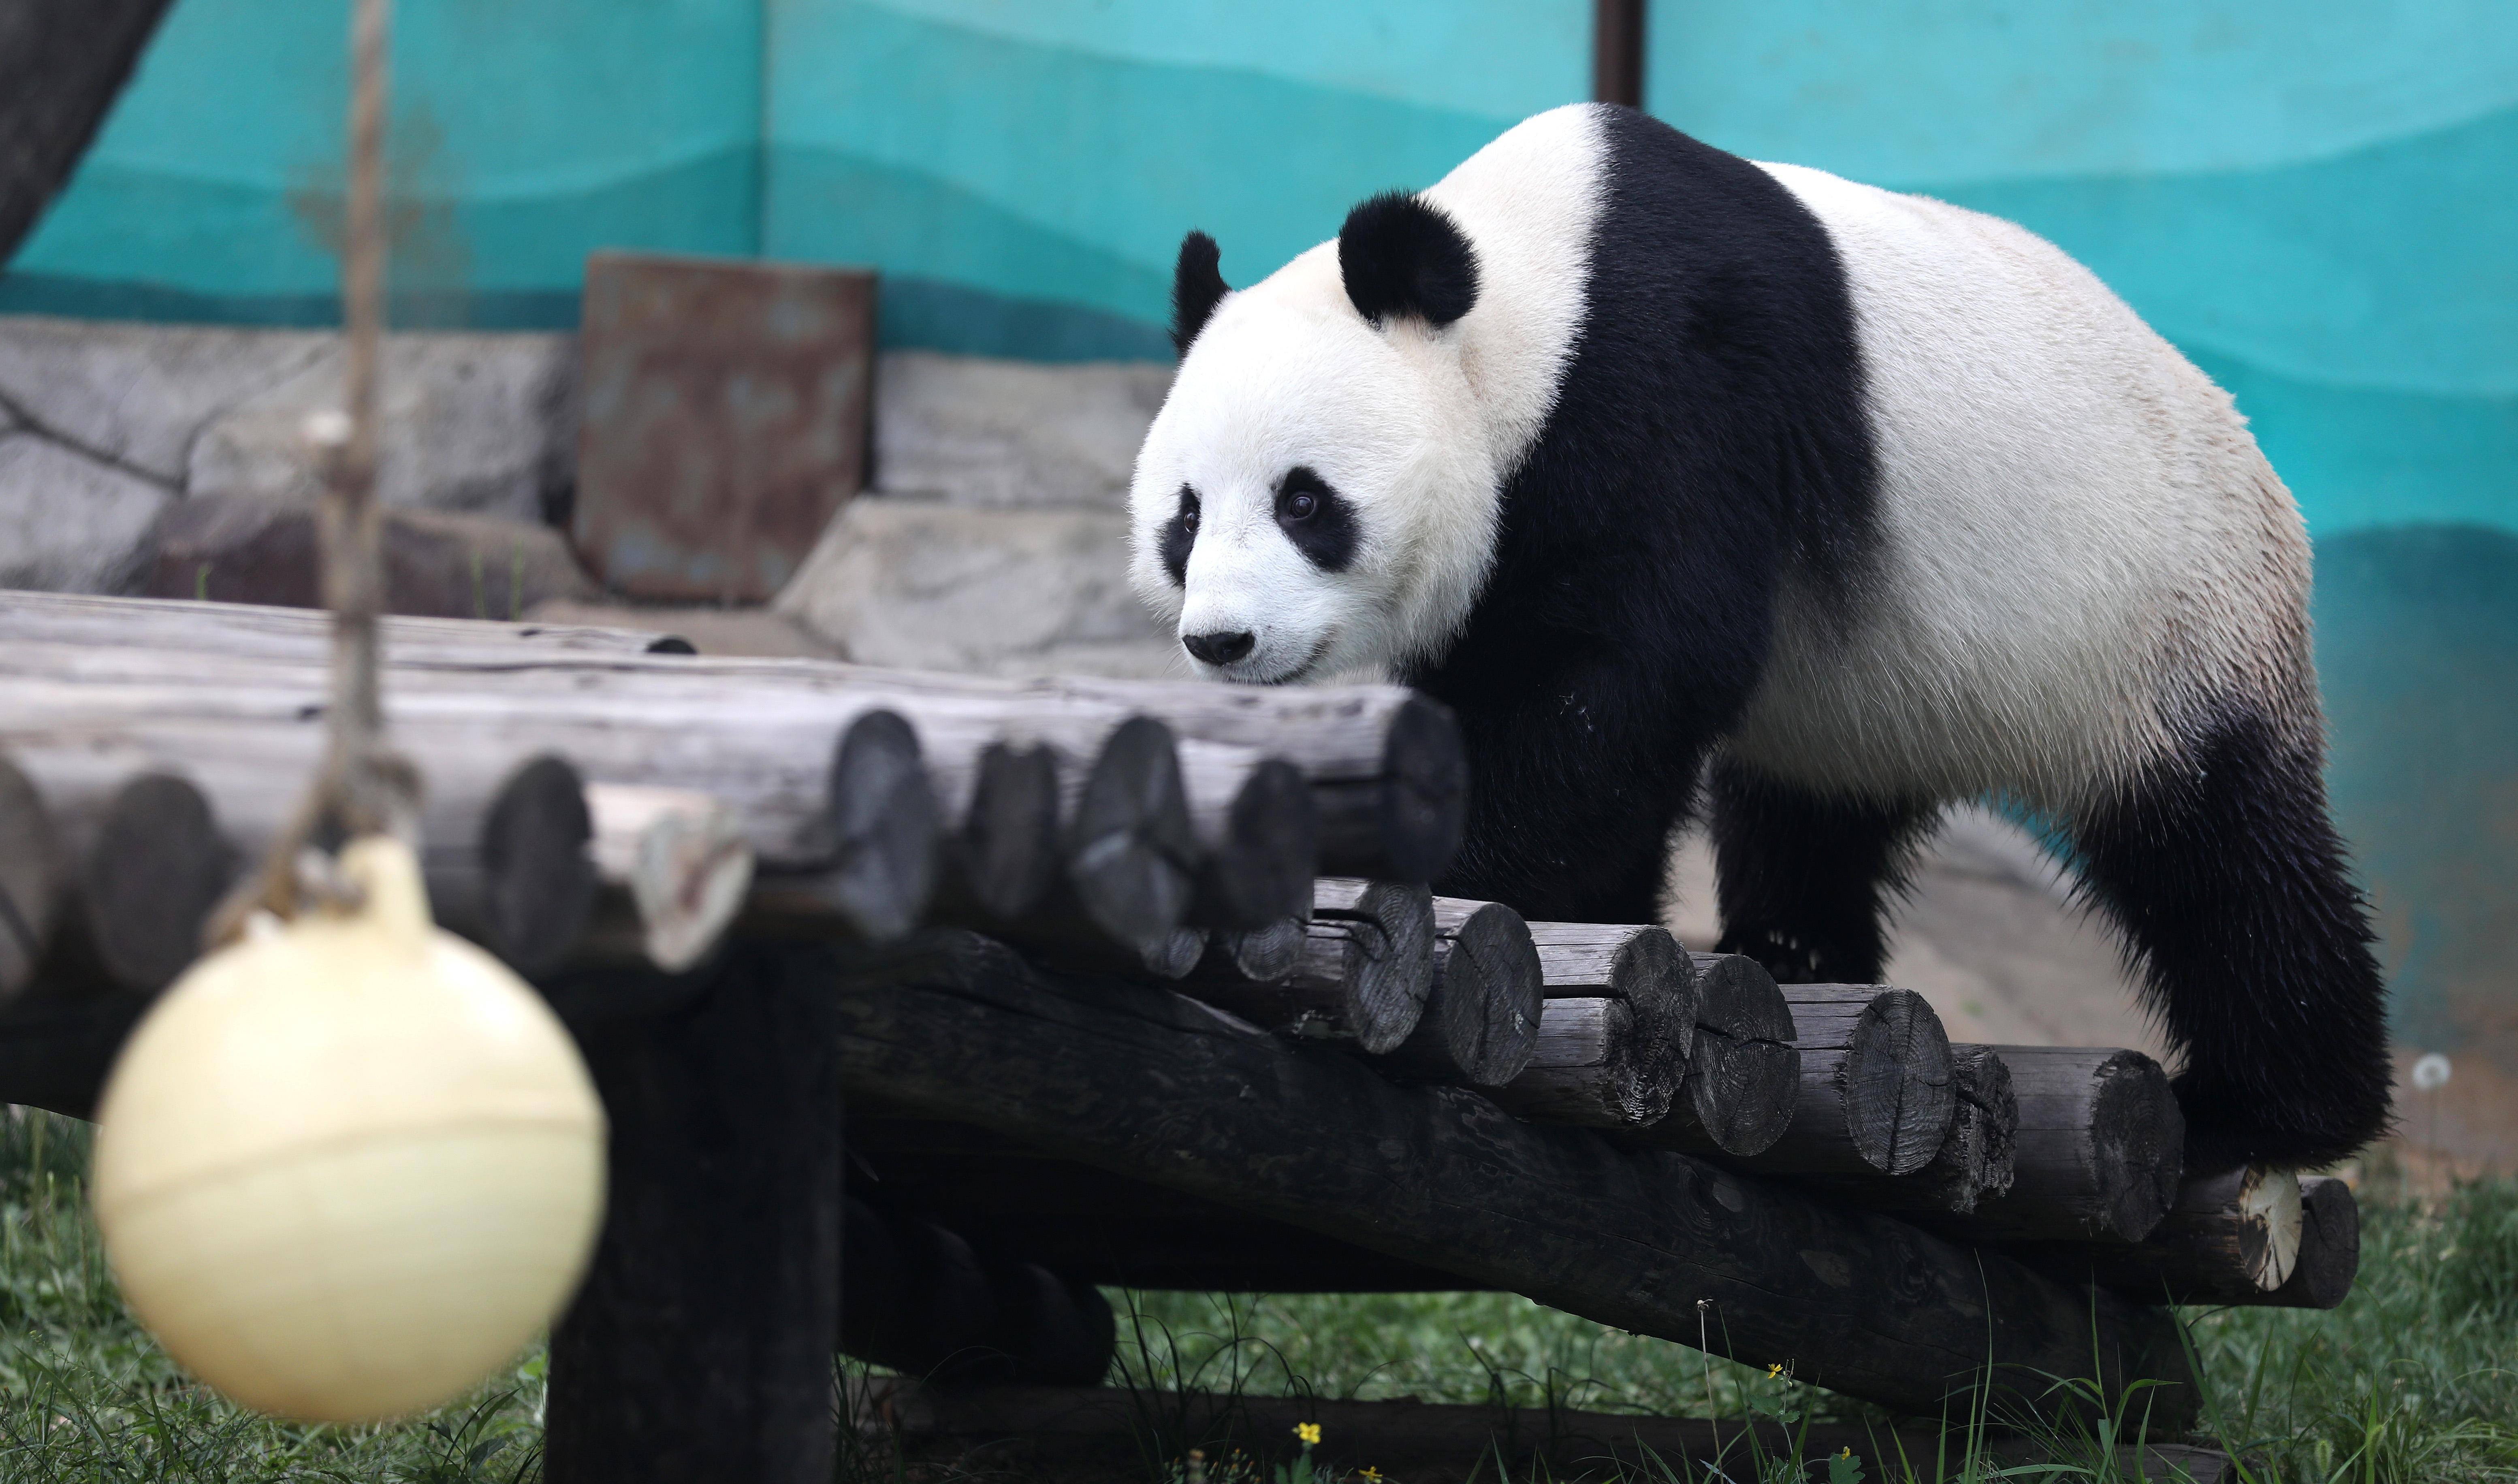 鞍山动物园熊猫馆门票图片